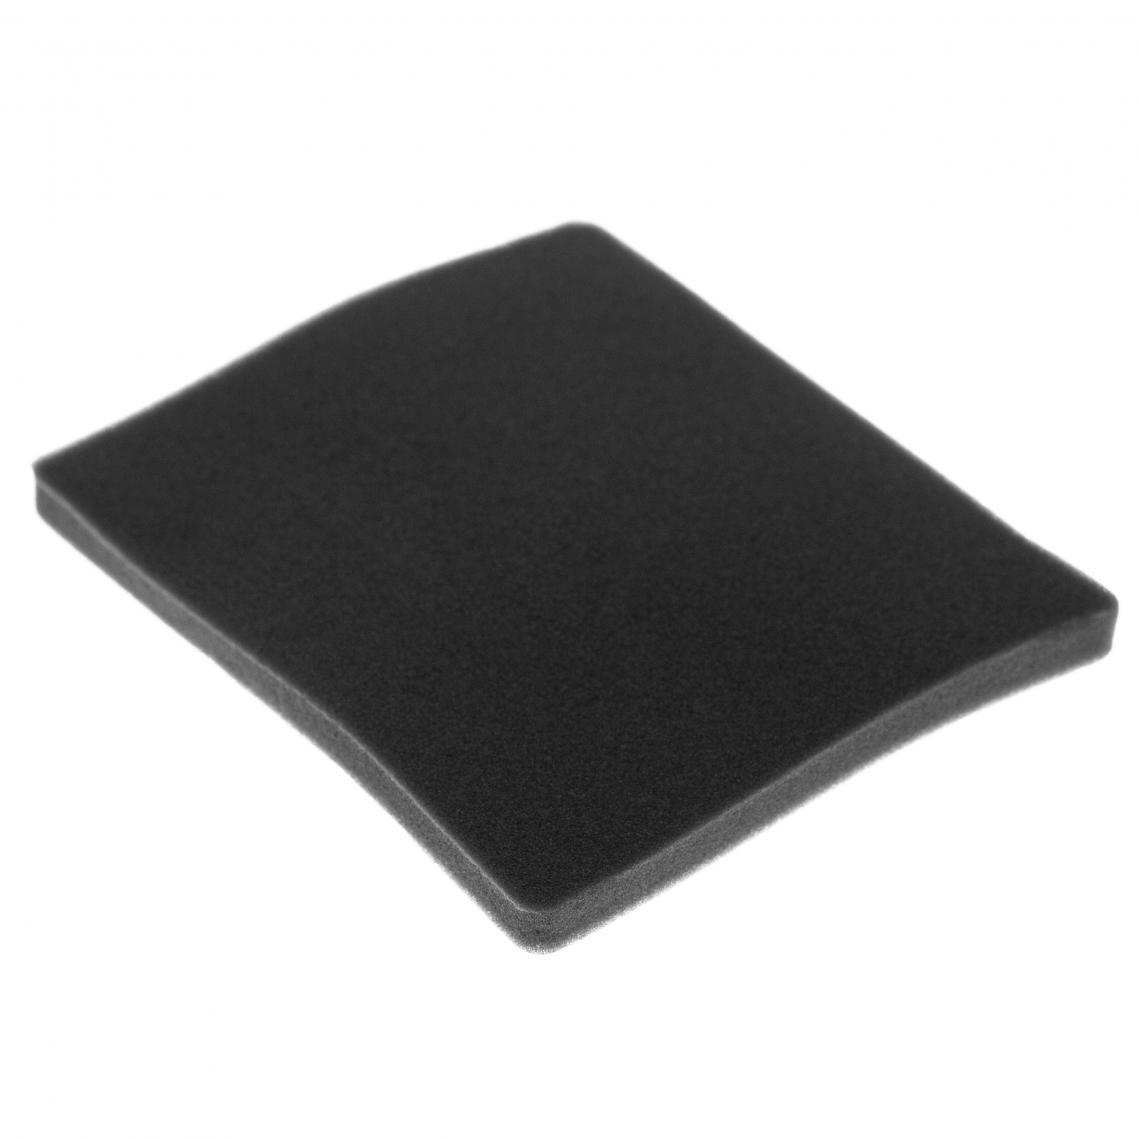 Vhbw - vhbw Filtre compatible avec Electrolux ACX6320CD (910288724) aspirateur - filtre de sortie d'air (filtre éponge), noir - Accessoire entretien des sols